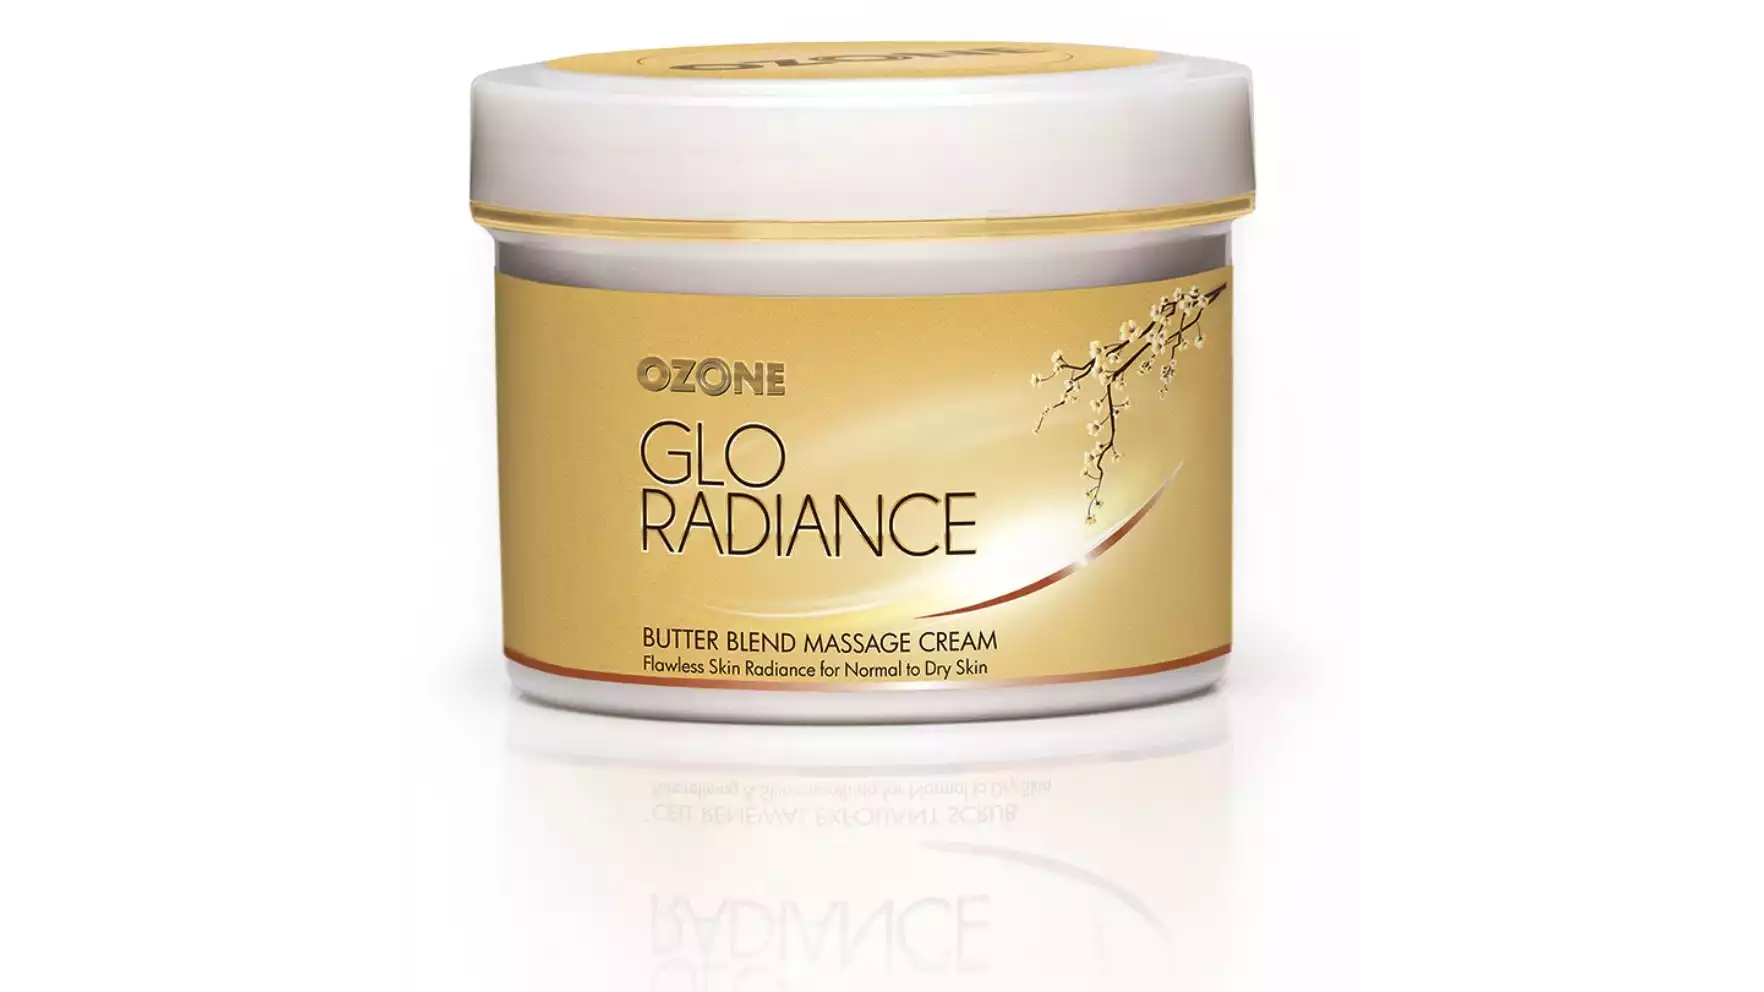 Ozone Glo Radiance Butter Blend Massage Cream (50g)